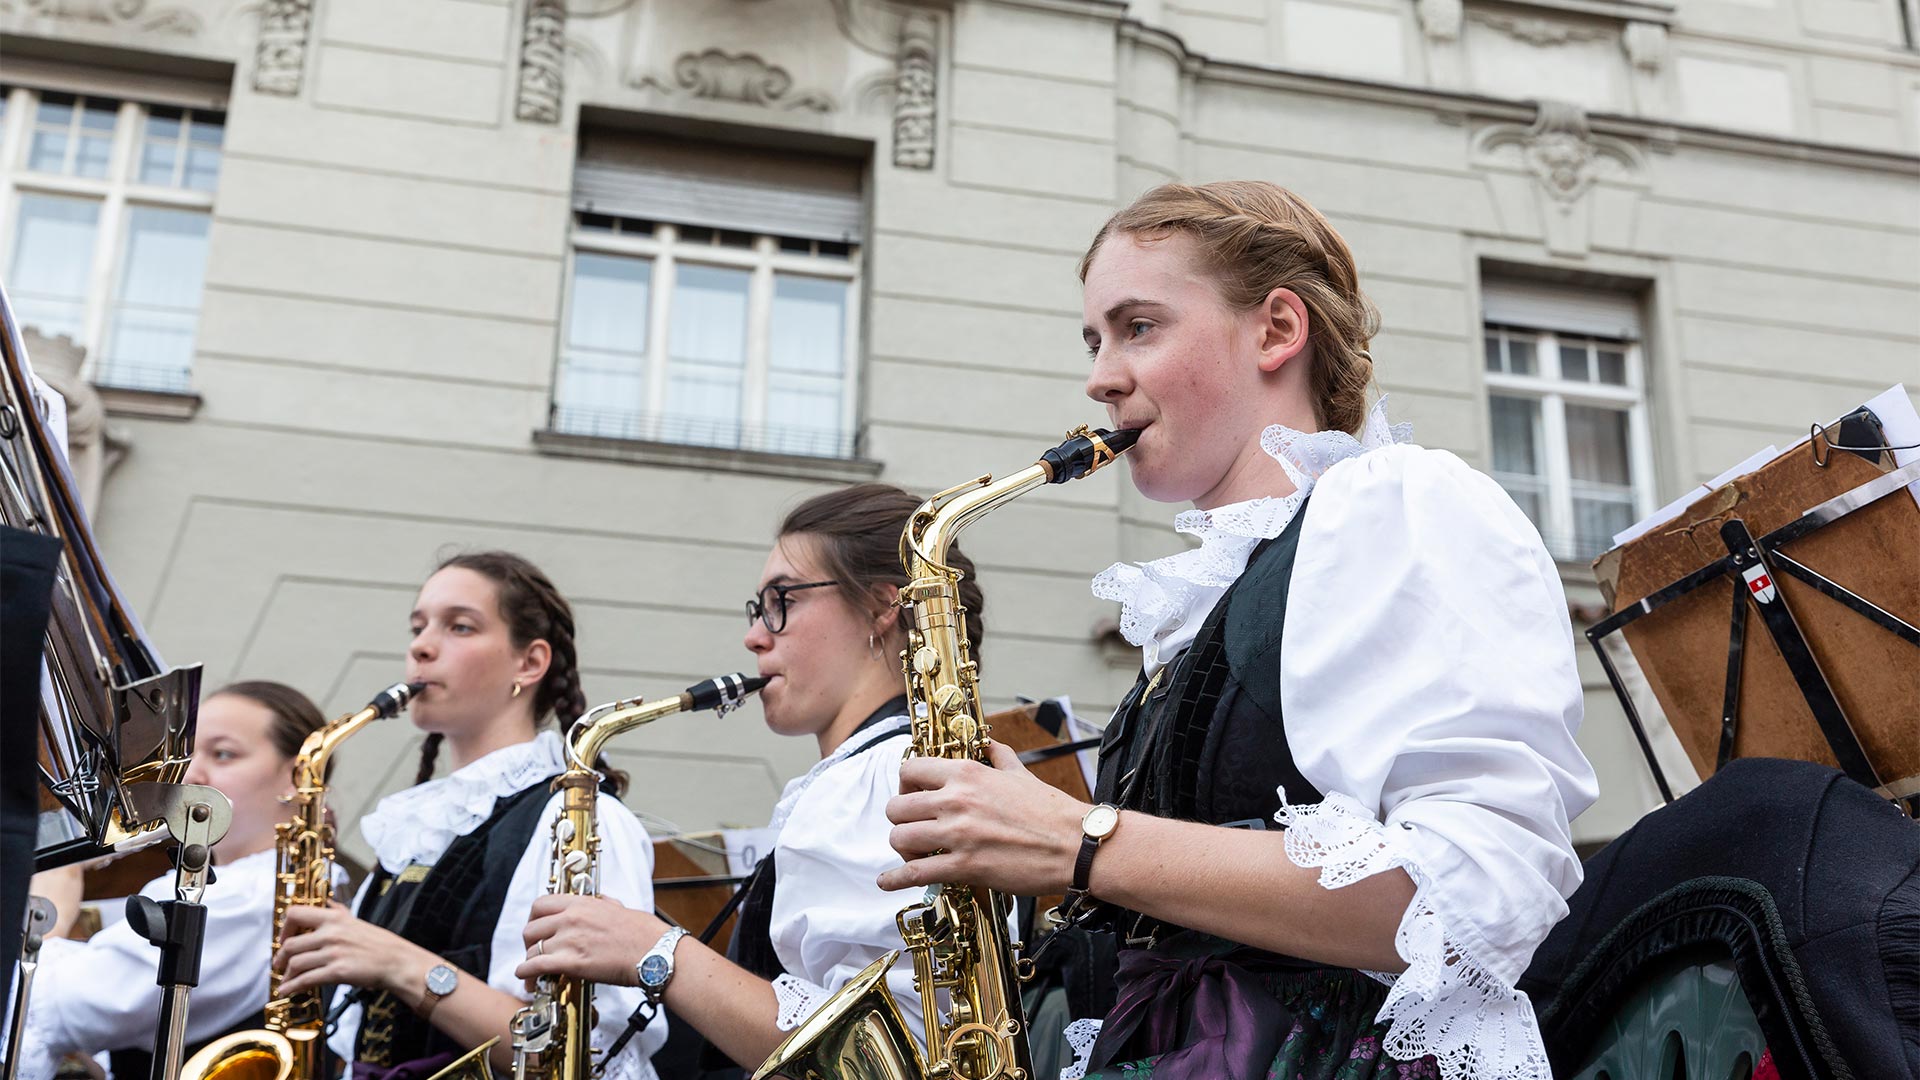 In primo piano una parte della banda altoatesina sta suonando degli strumenti a fiato in un evento musicale della città.